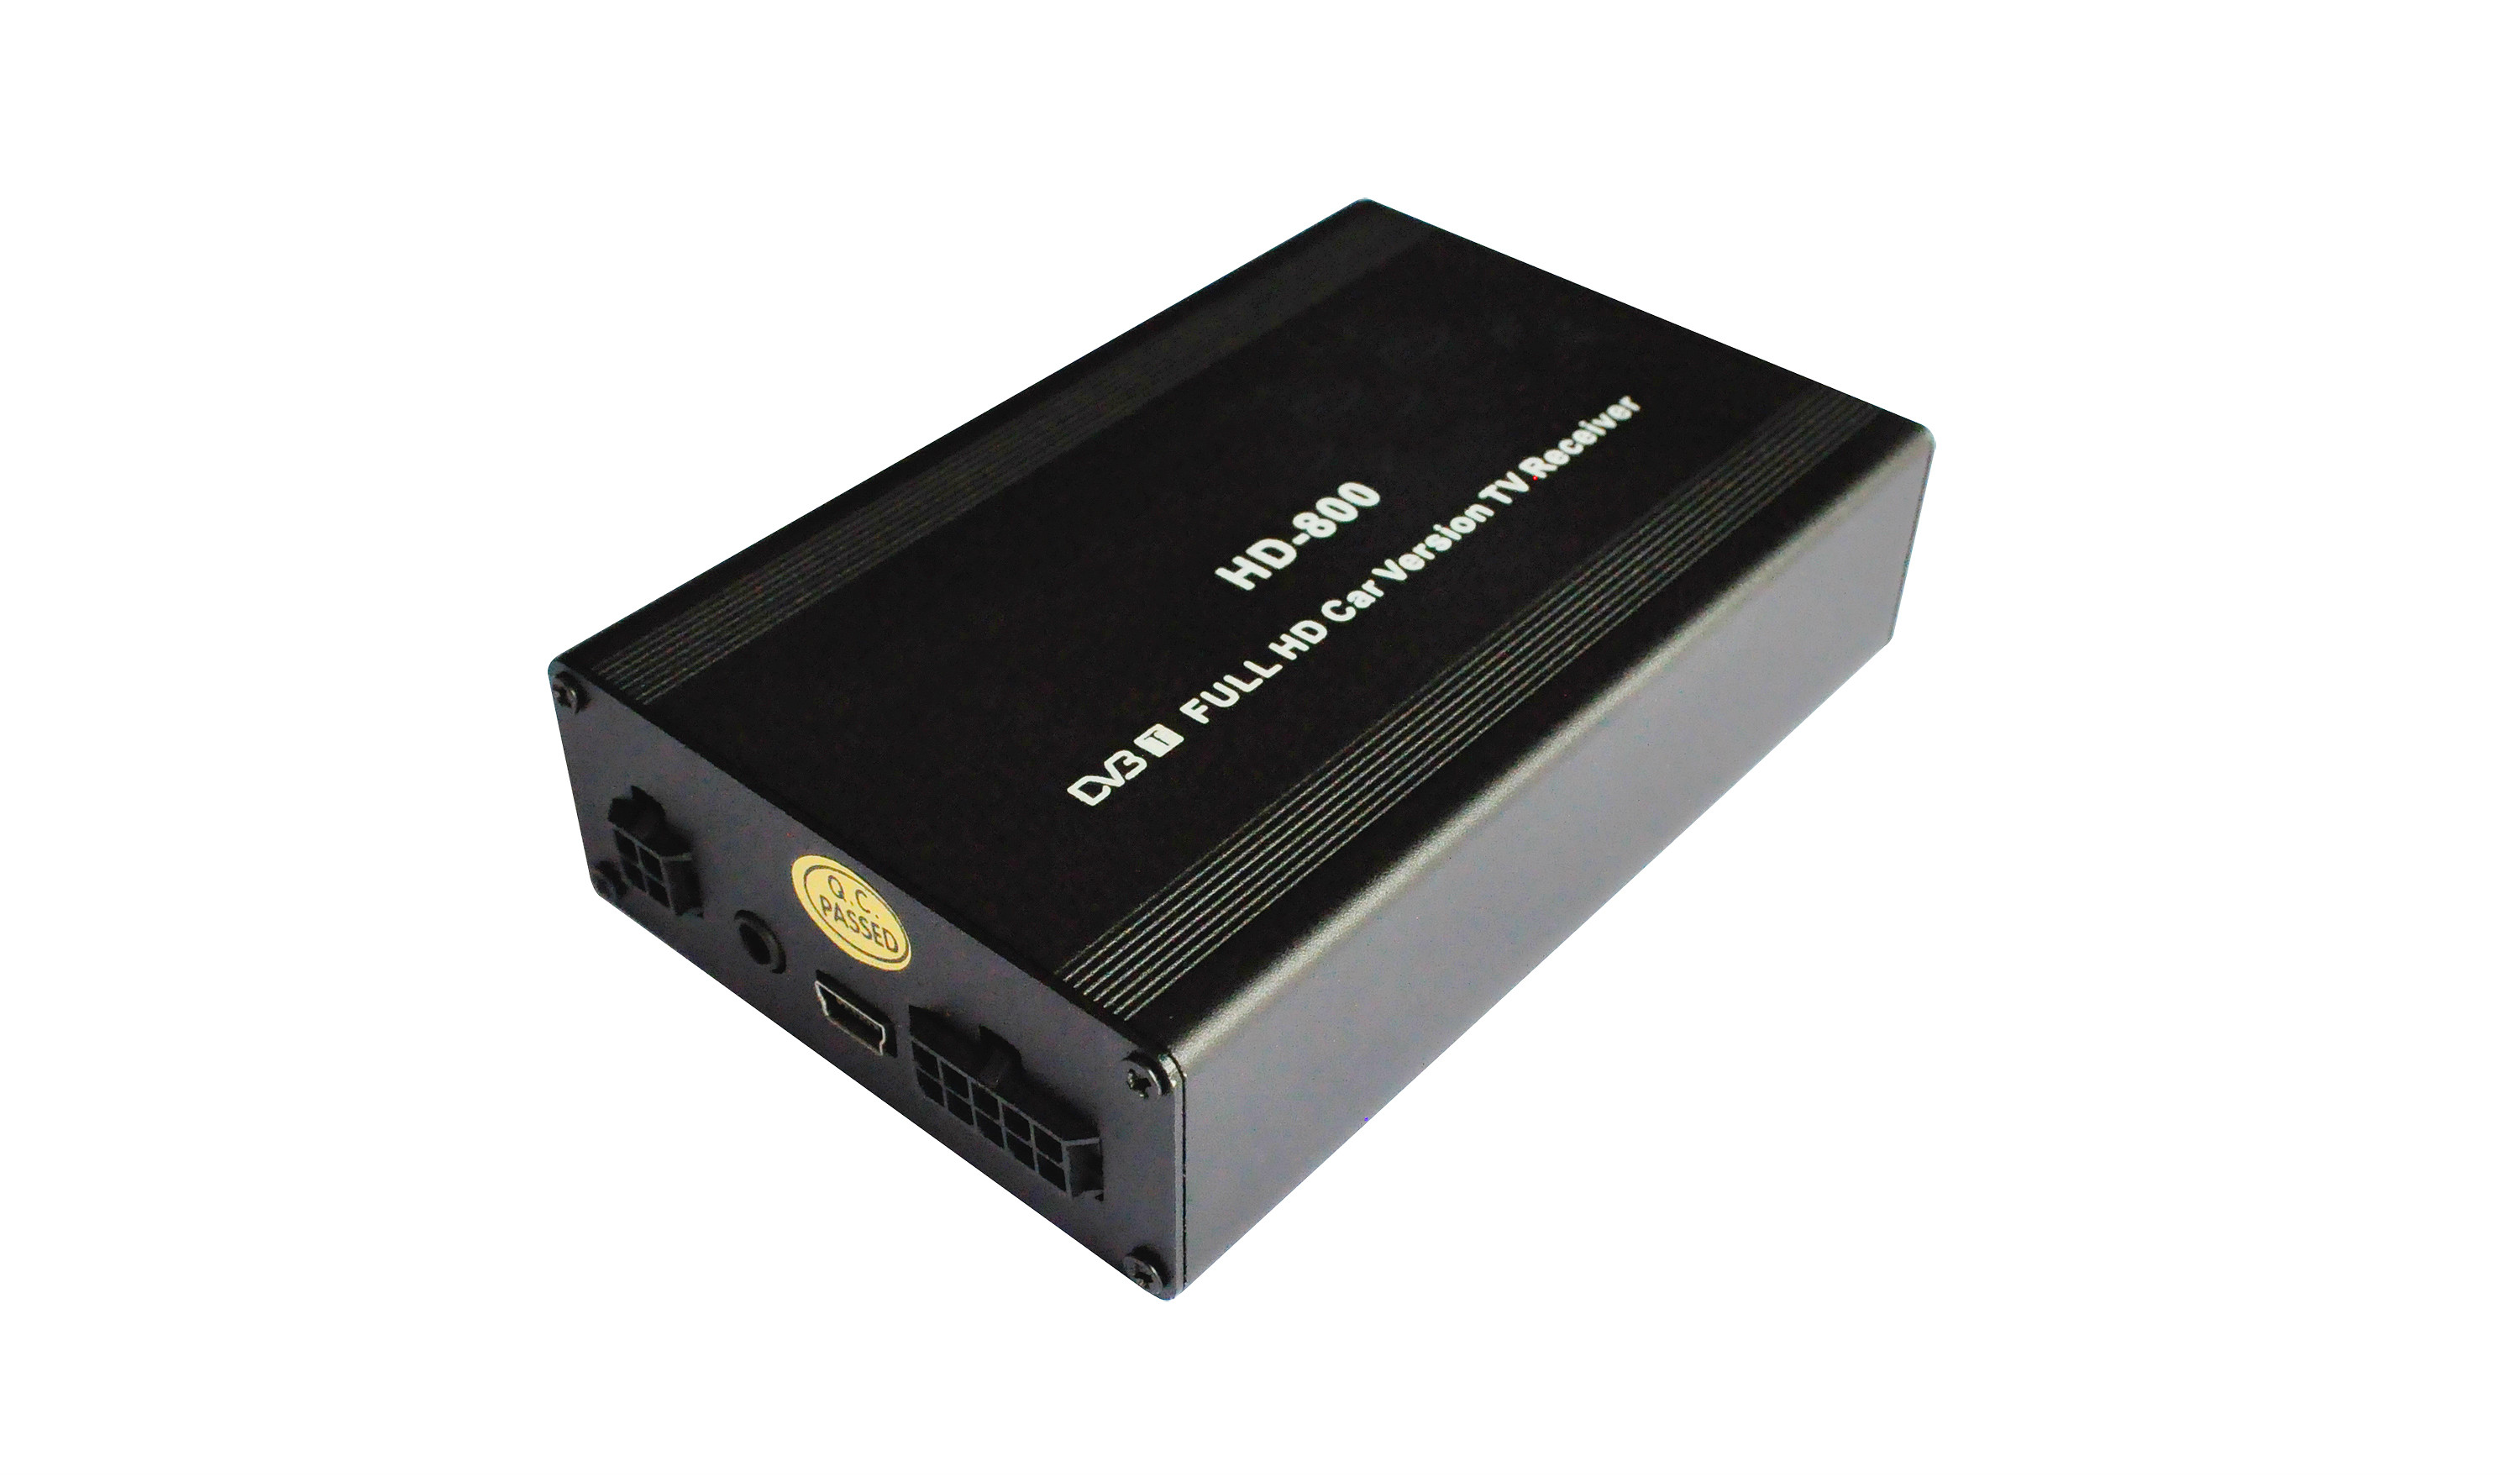 Double Tuner TNT AGW92 DVB-T 160km/h fonction PVR USB LED déportée avec 2 antennes et décodeur DIVX MKV MPEG4